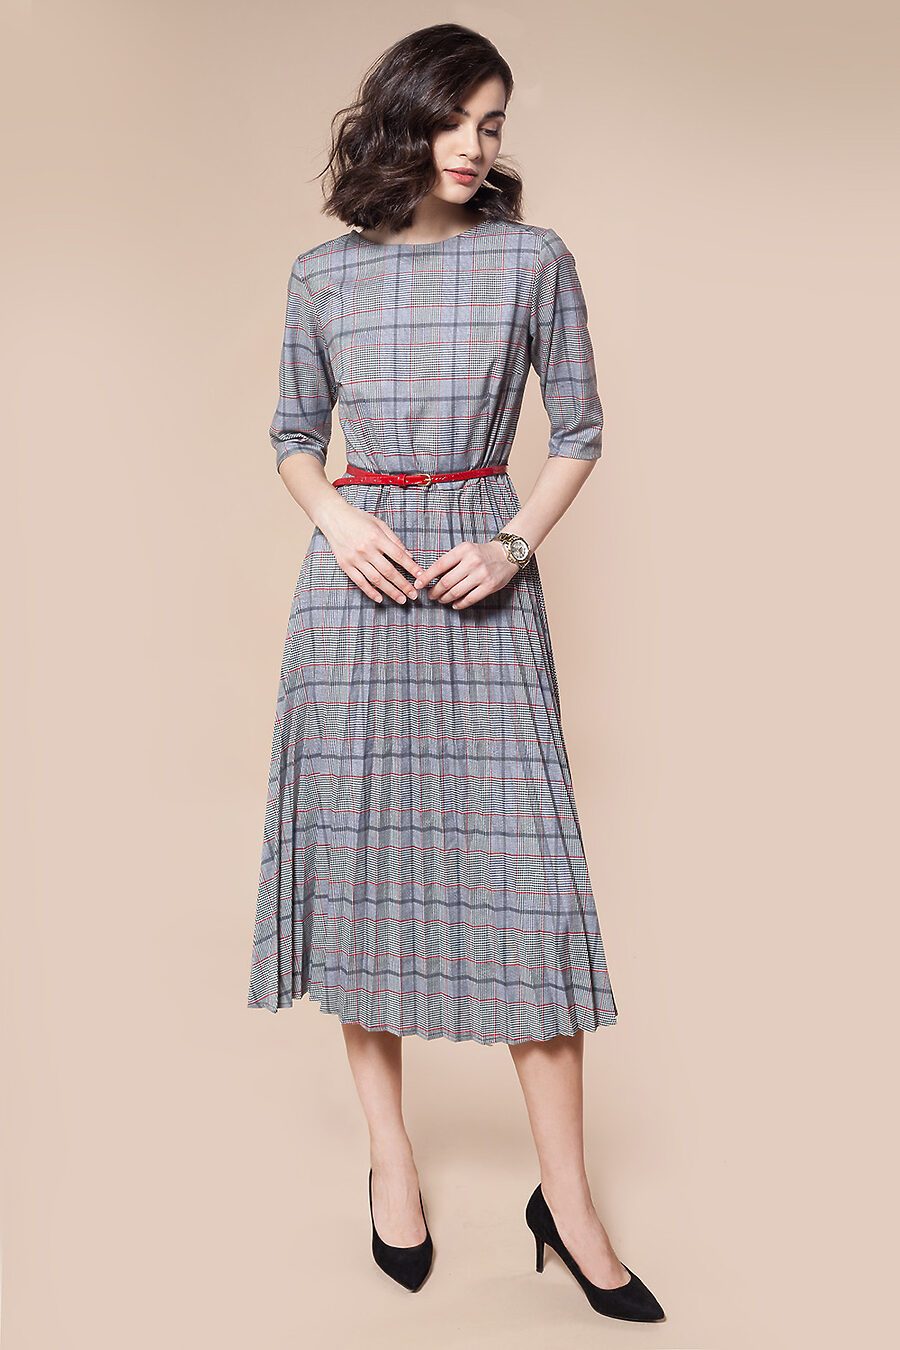 Платье для женщин VILATTE 795715 купить оптом от производителя. Совместная покупка женской одежды в OptMoyo